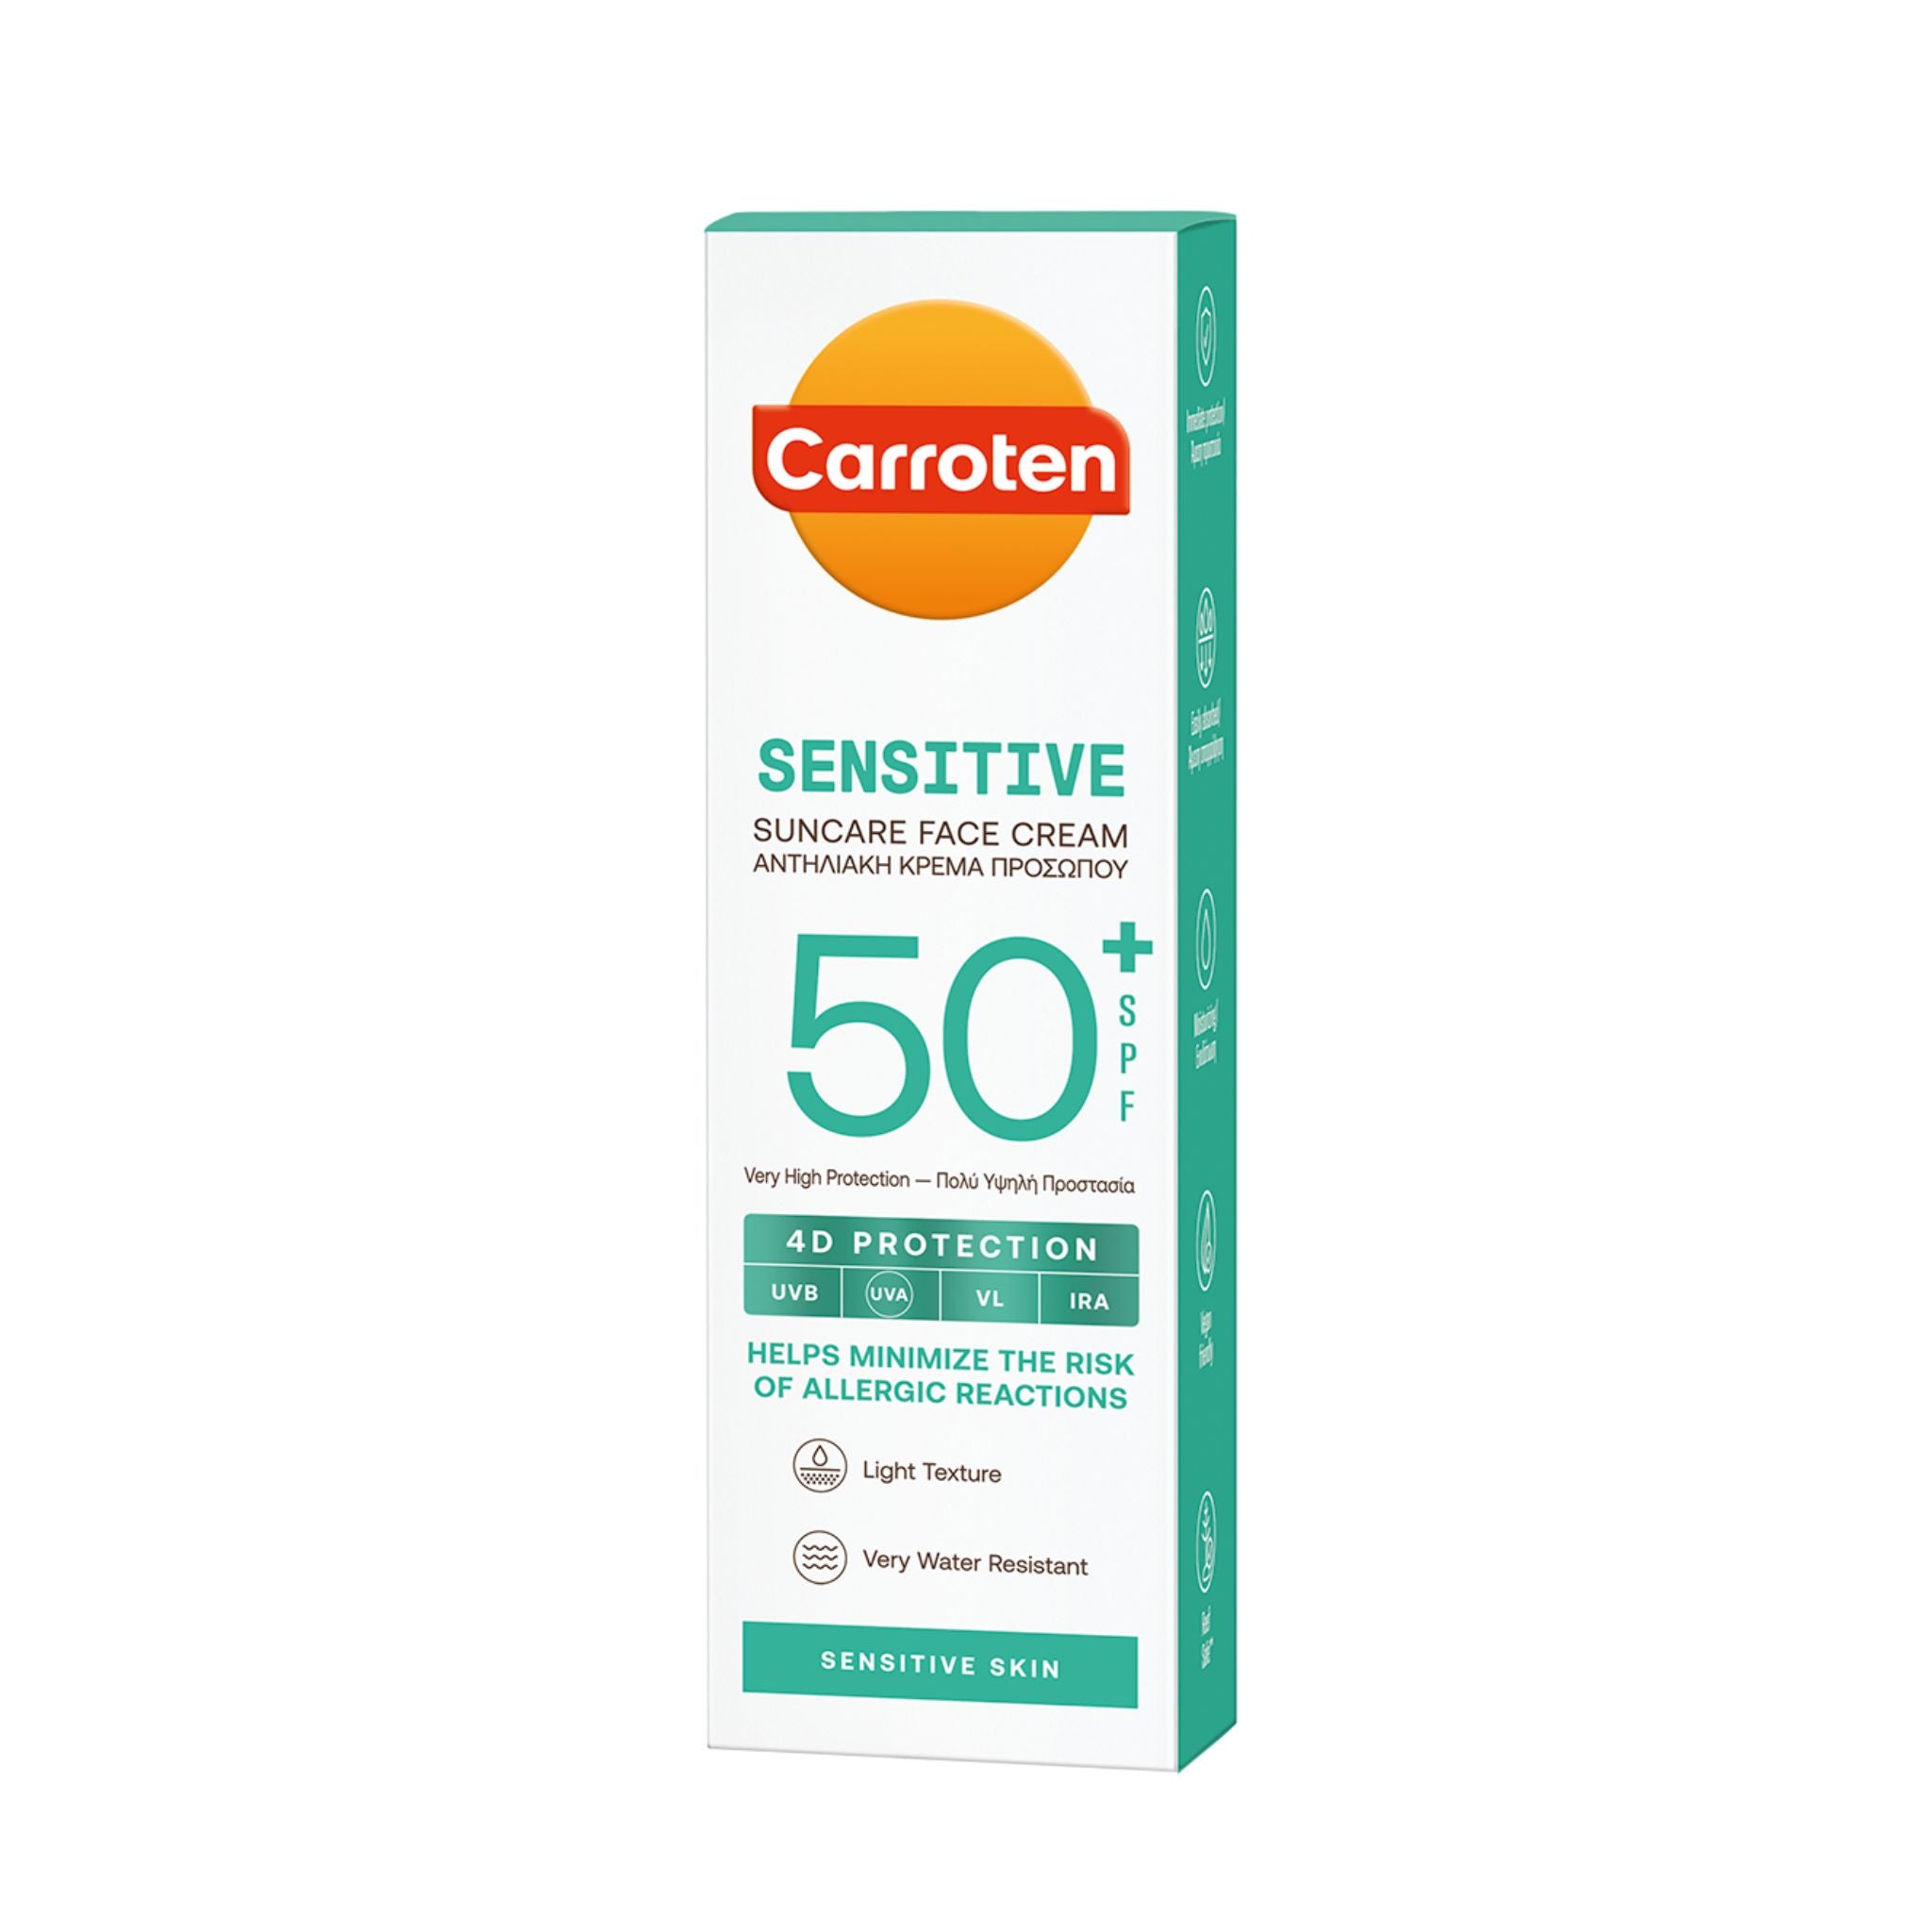 Carroten Sensitive 50 spf